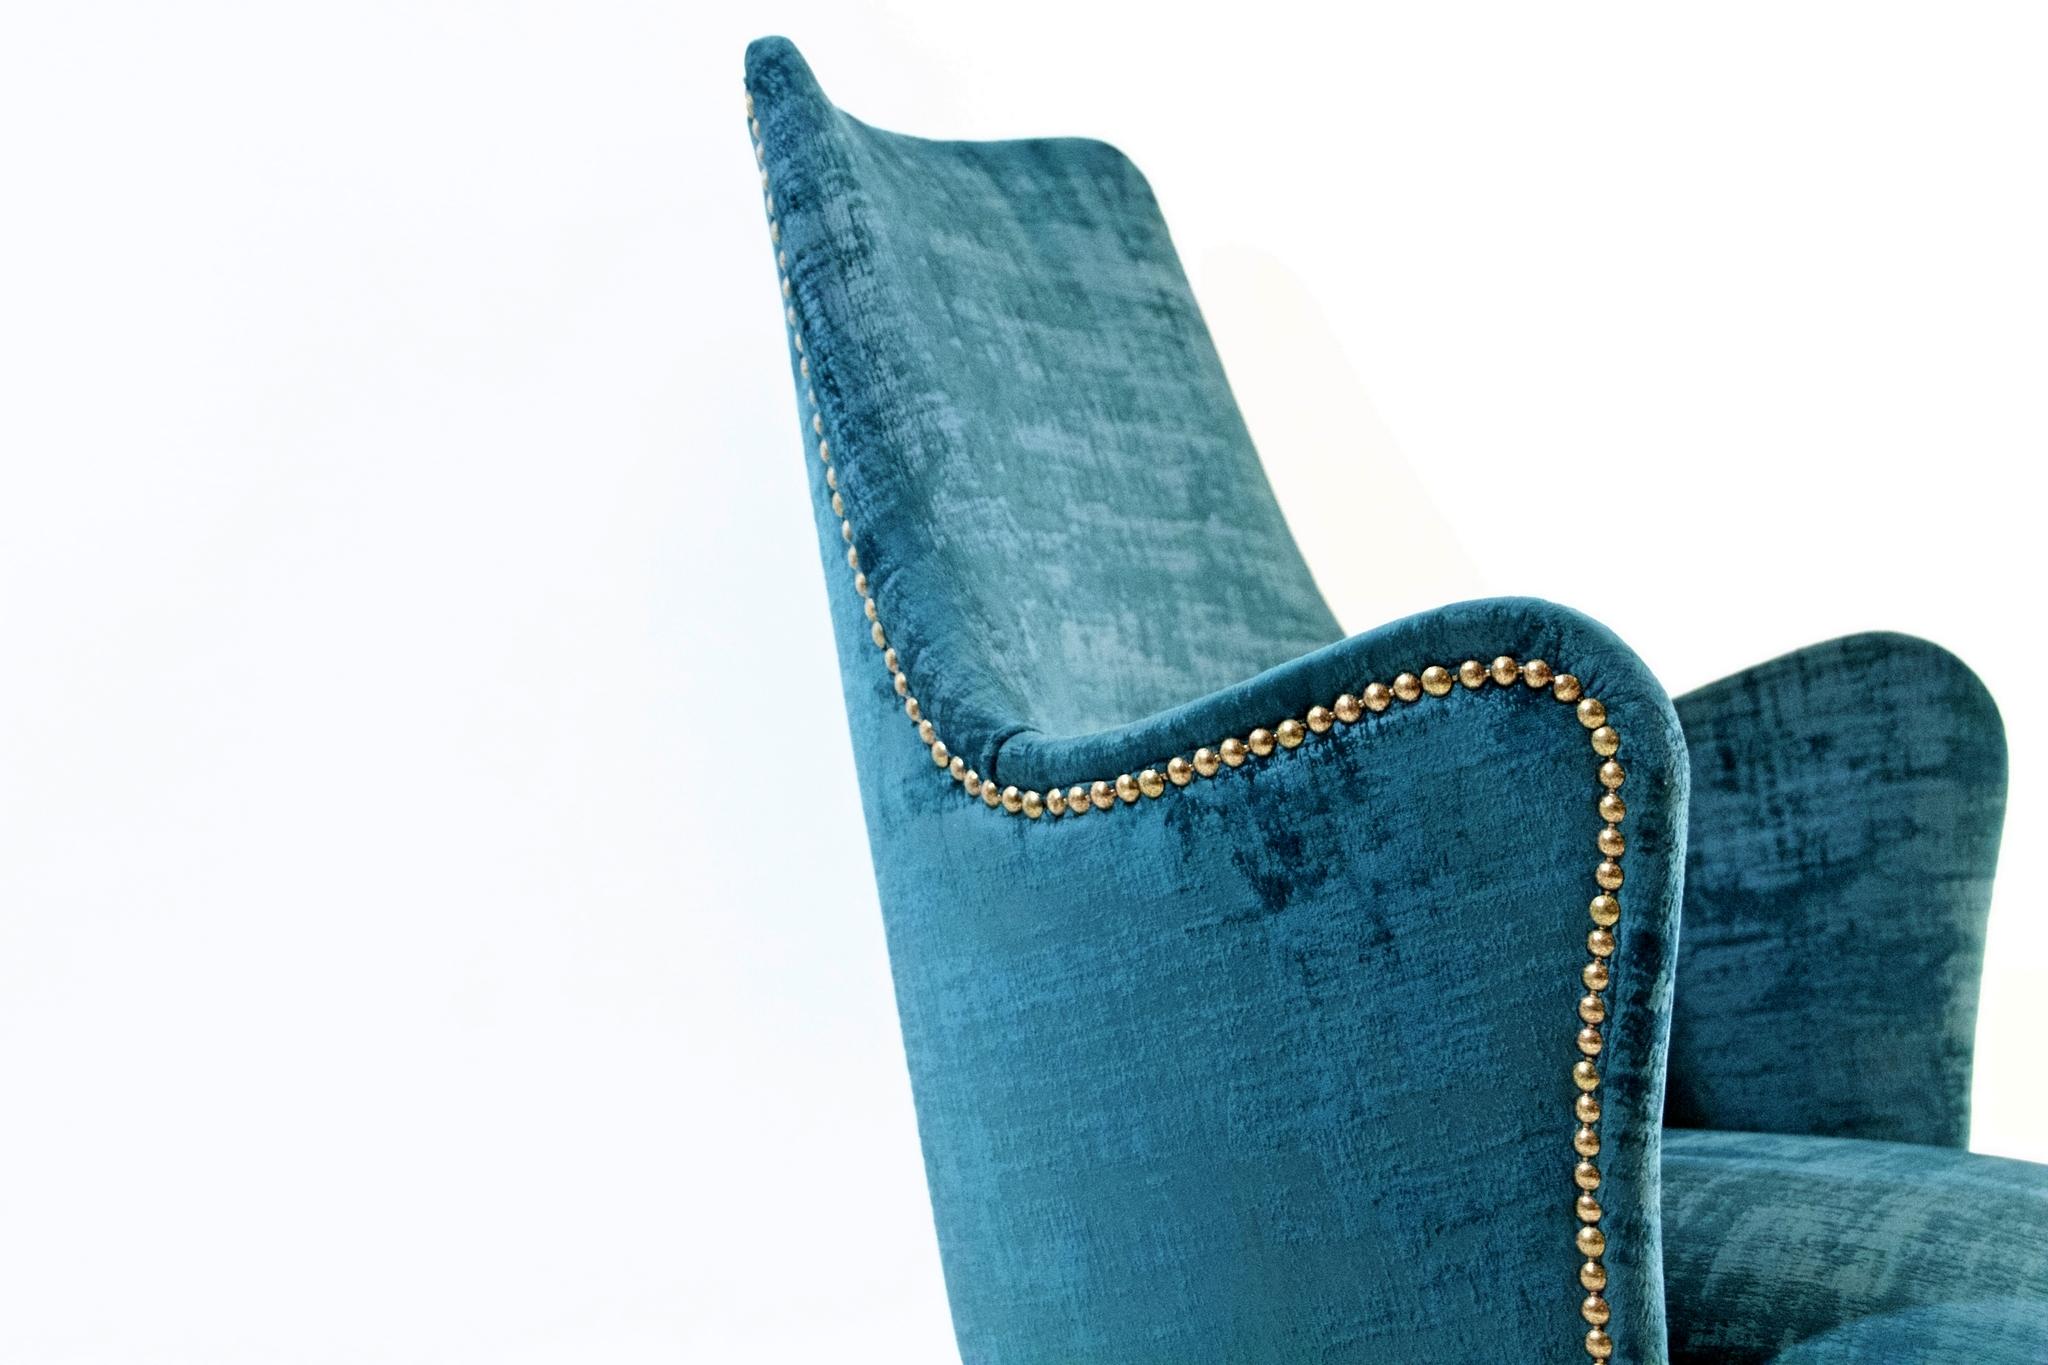 20th Century Midcentury Teal Velvet Chairs by Osvaldo Borsani, Italy